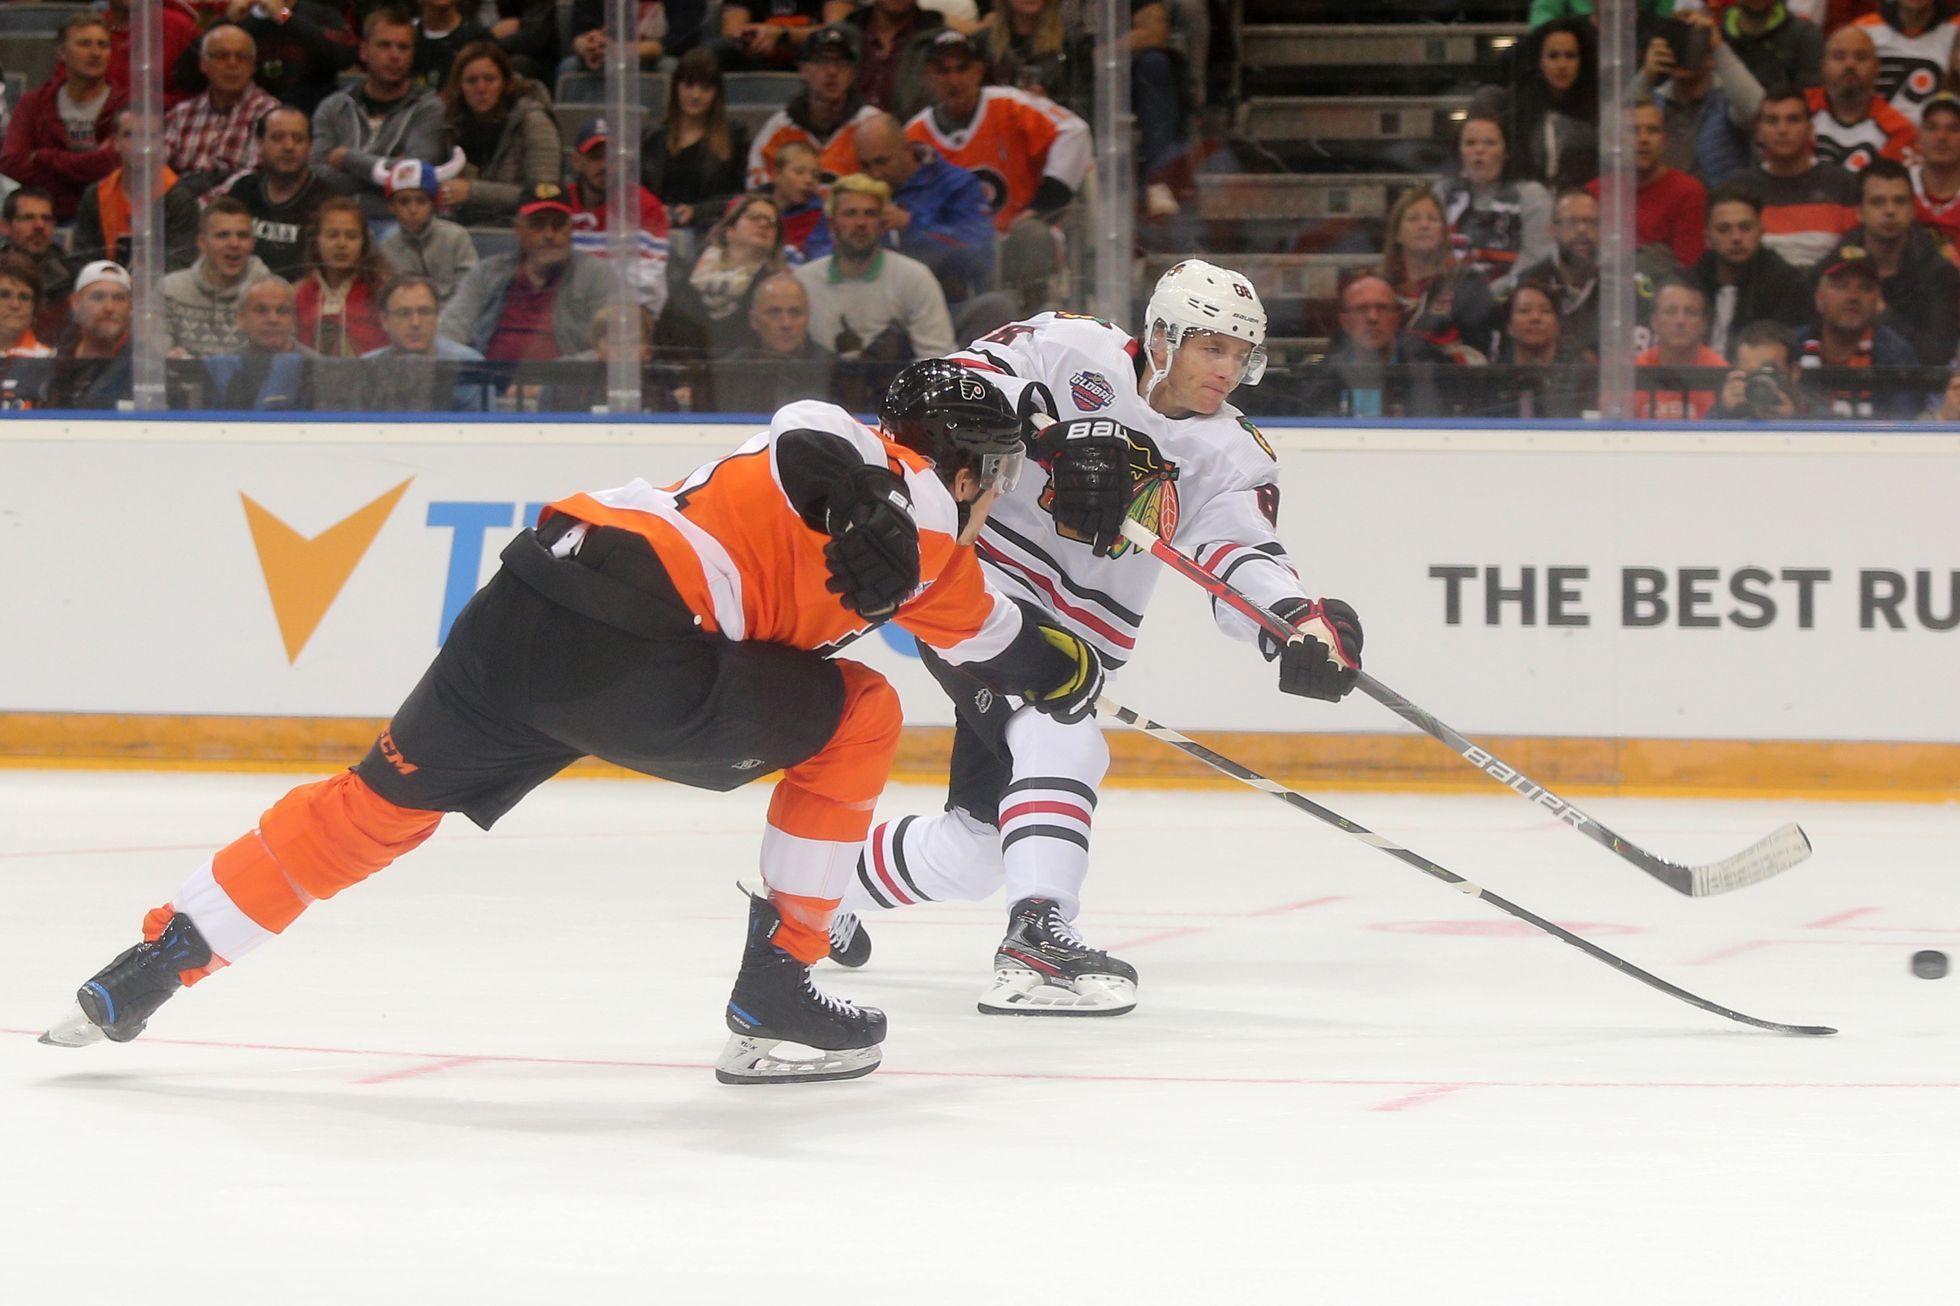 NHL v Praze, Philadelphia - Chicago: Patrick Kane pálí na branku Flyers